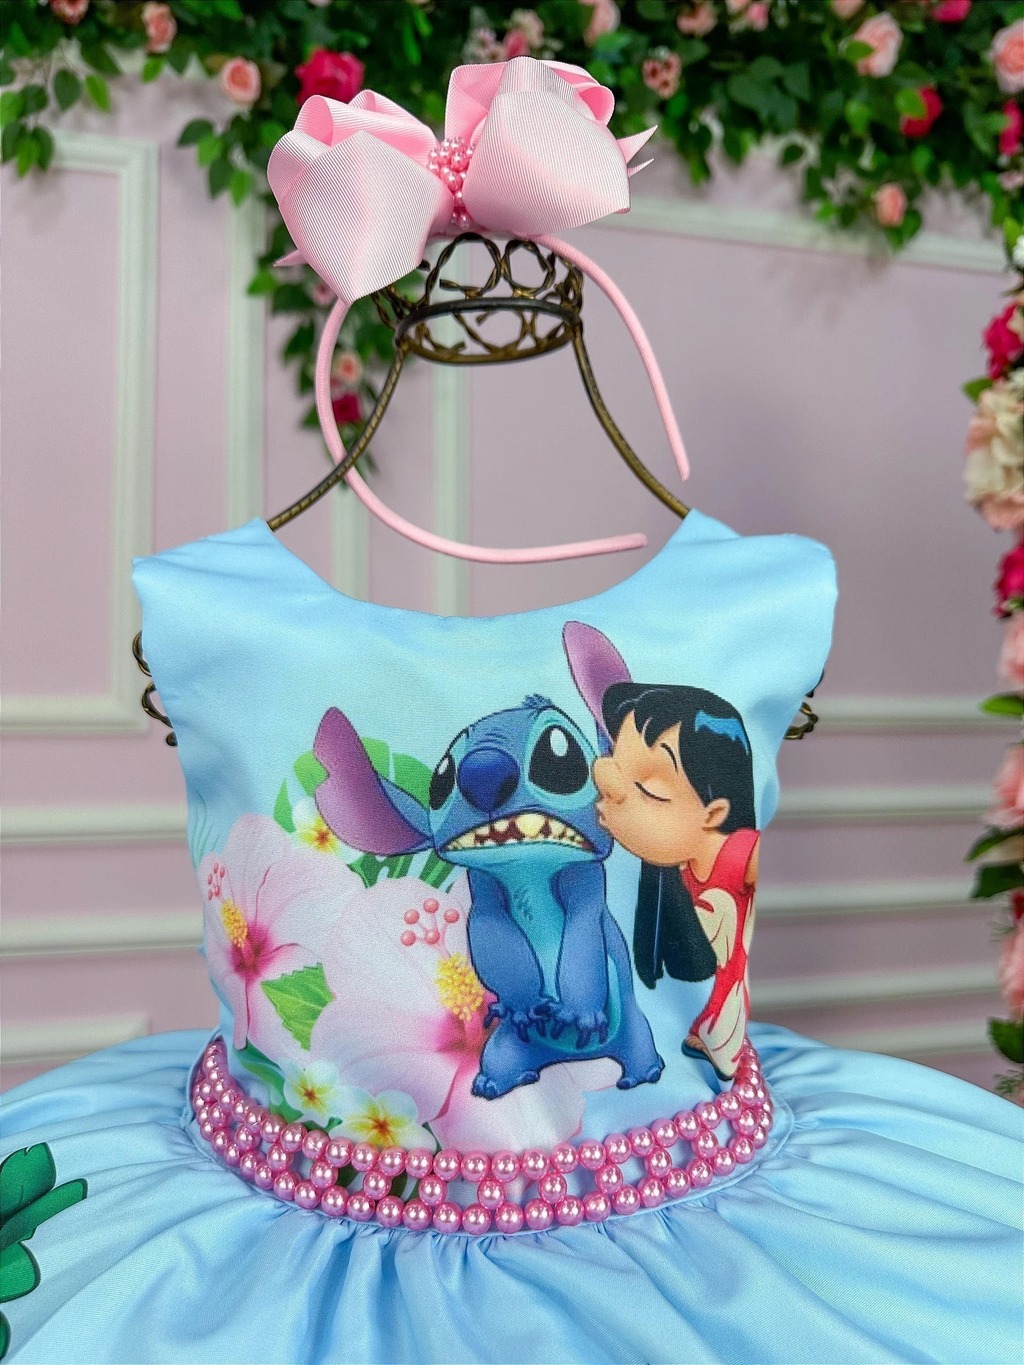 Vestido Bebê Disney Fantasia Princesa Ariel com Faixa - Frete Grátis –  Boutique Baby Kids